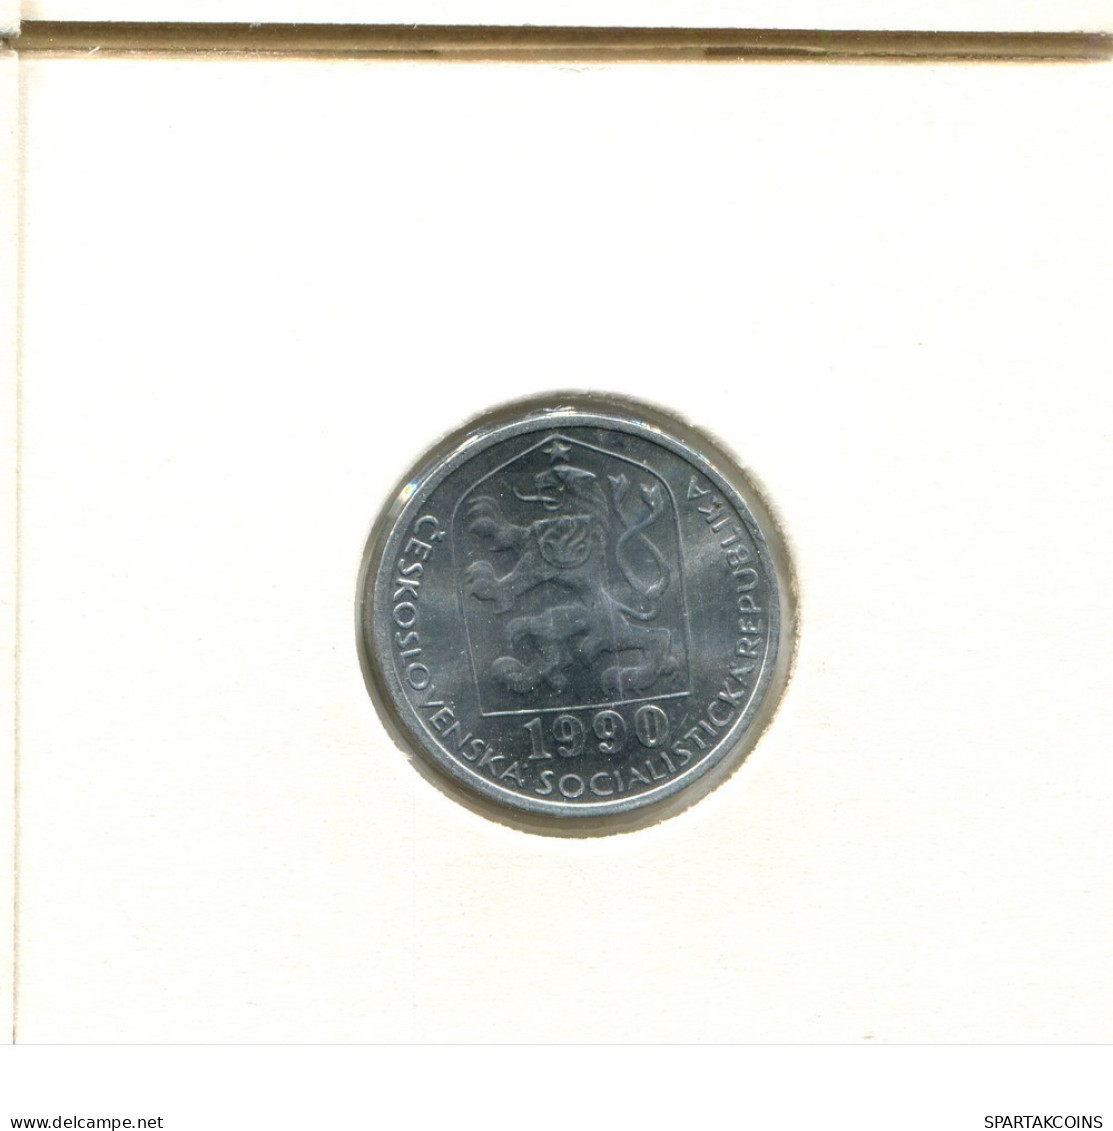 10 HALERU 1990 CHECOSLOVAQUIA CZECHOESLOVAQUIA SLOVAKIA Moneda #AZ936.E.A - Cecoslovacchia